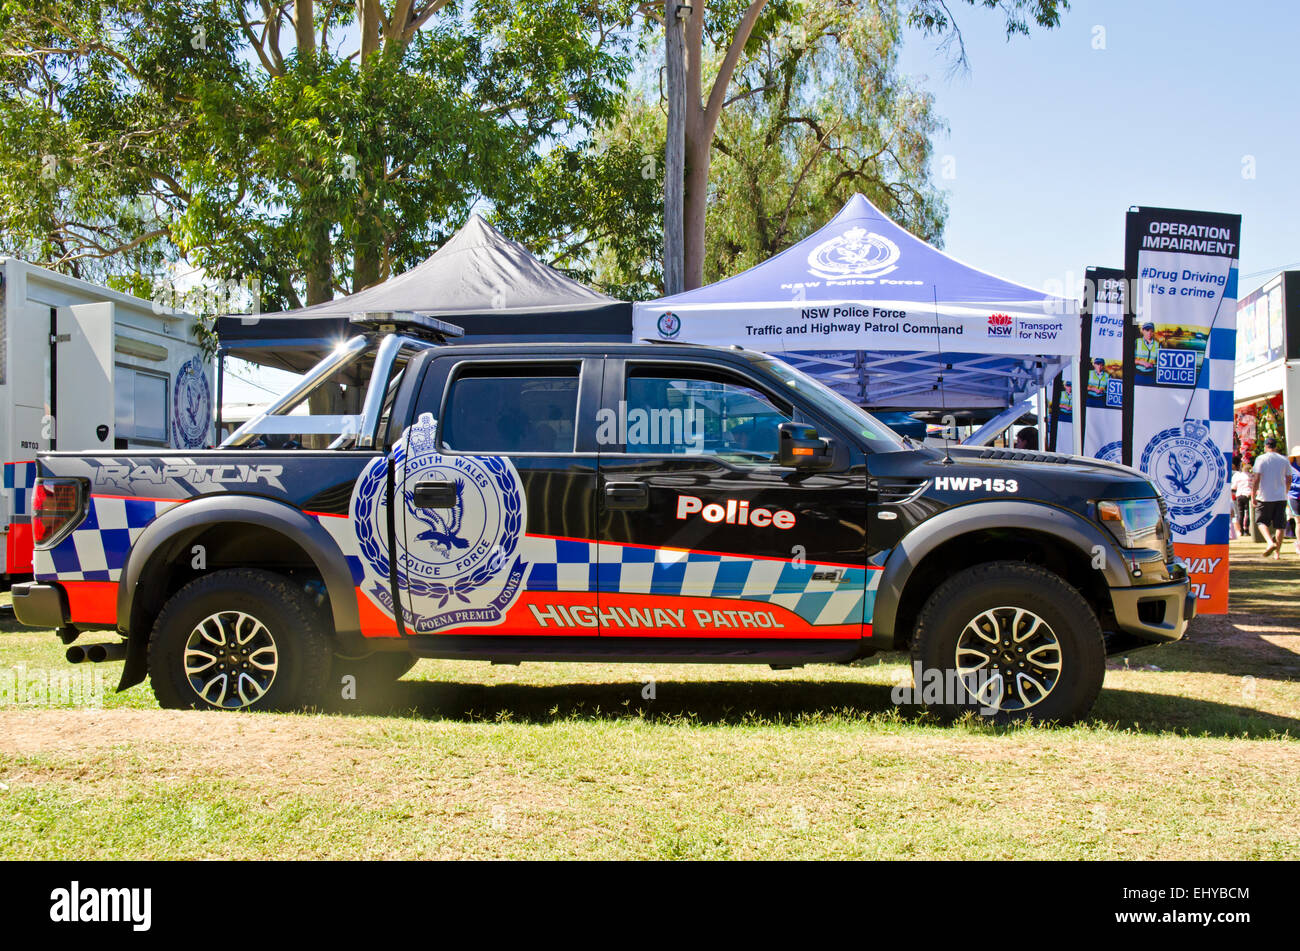 New South Wales Australien Highway Patrol Polizeifahrzeug. Ford f-150 SVT Raptor auf dem Display an einem Land zeigen. Stockfoto